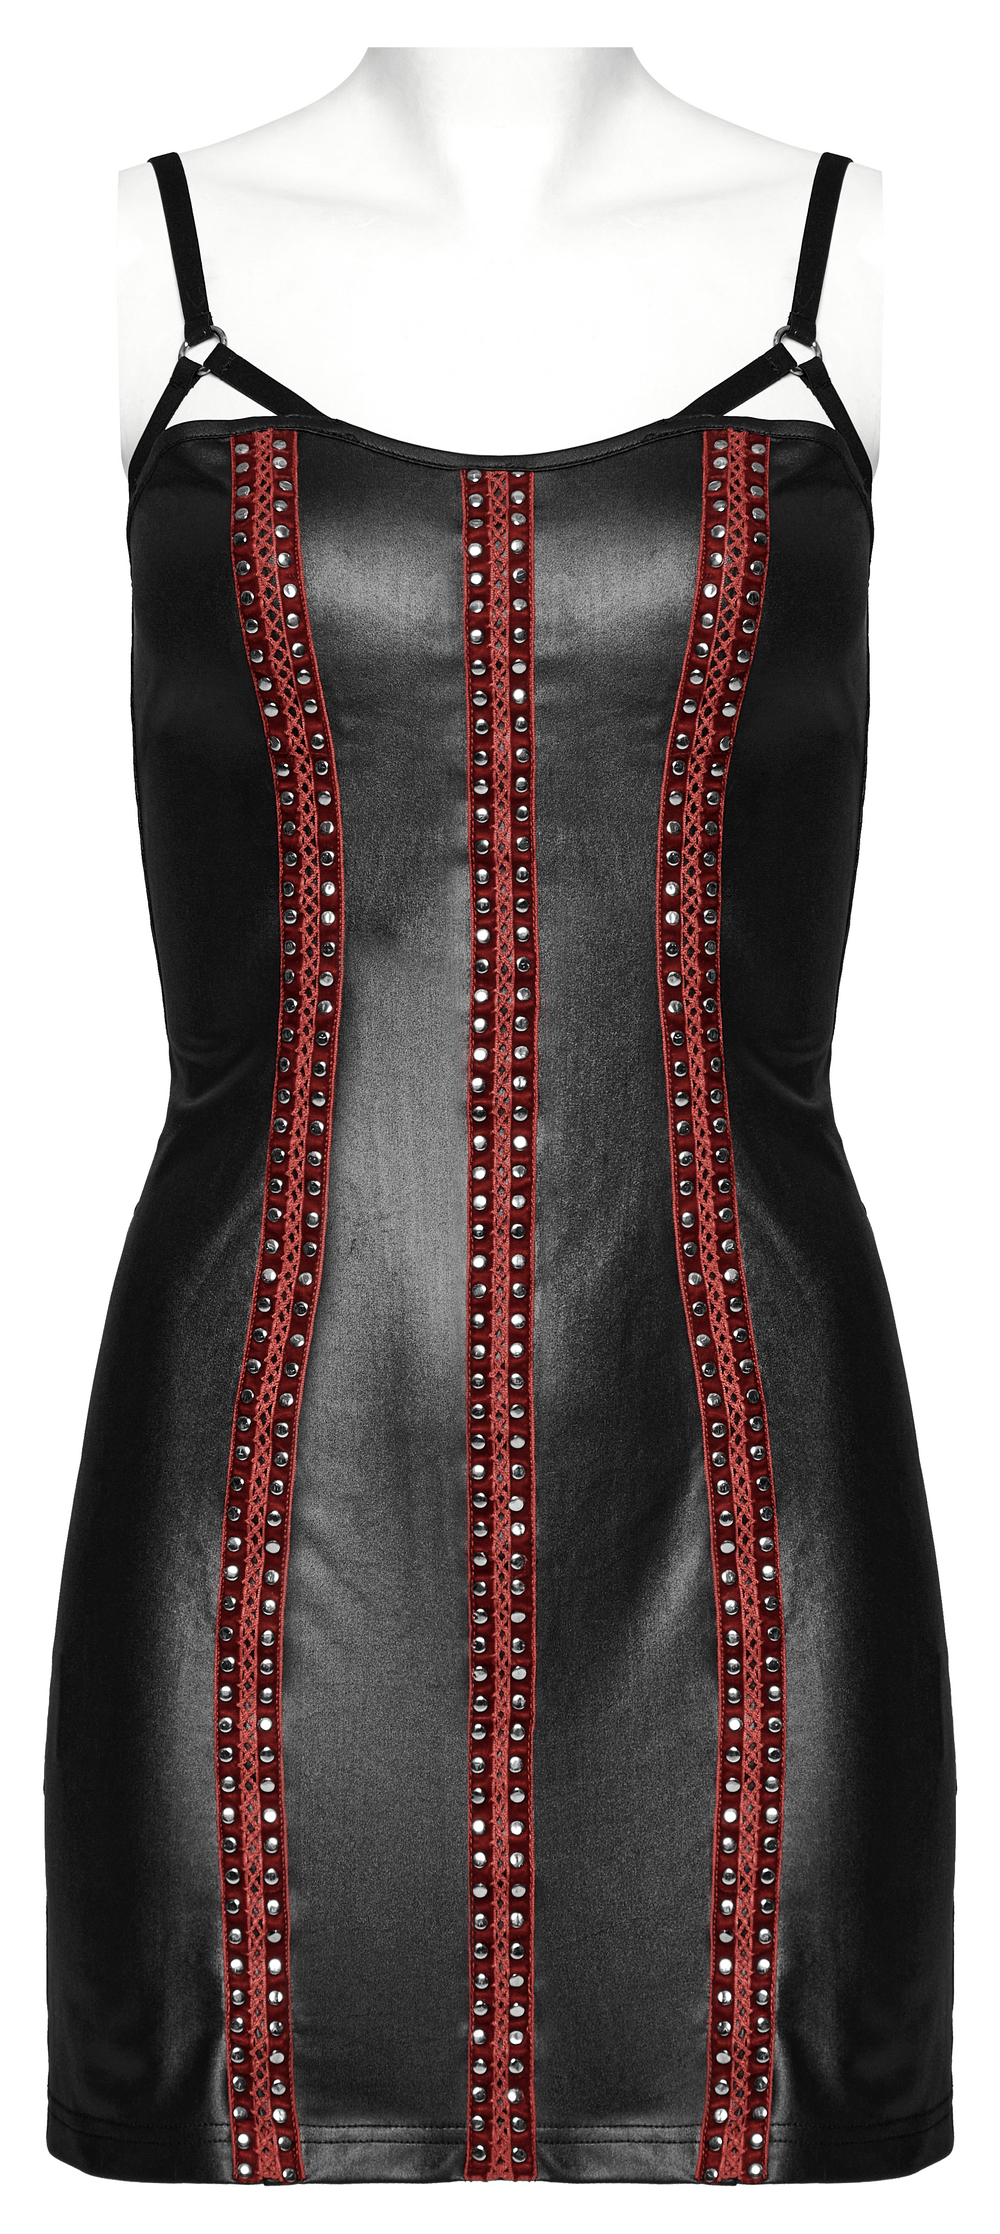 Sleek Rivet Webbing Dress with Adjustable Straps